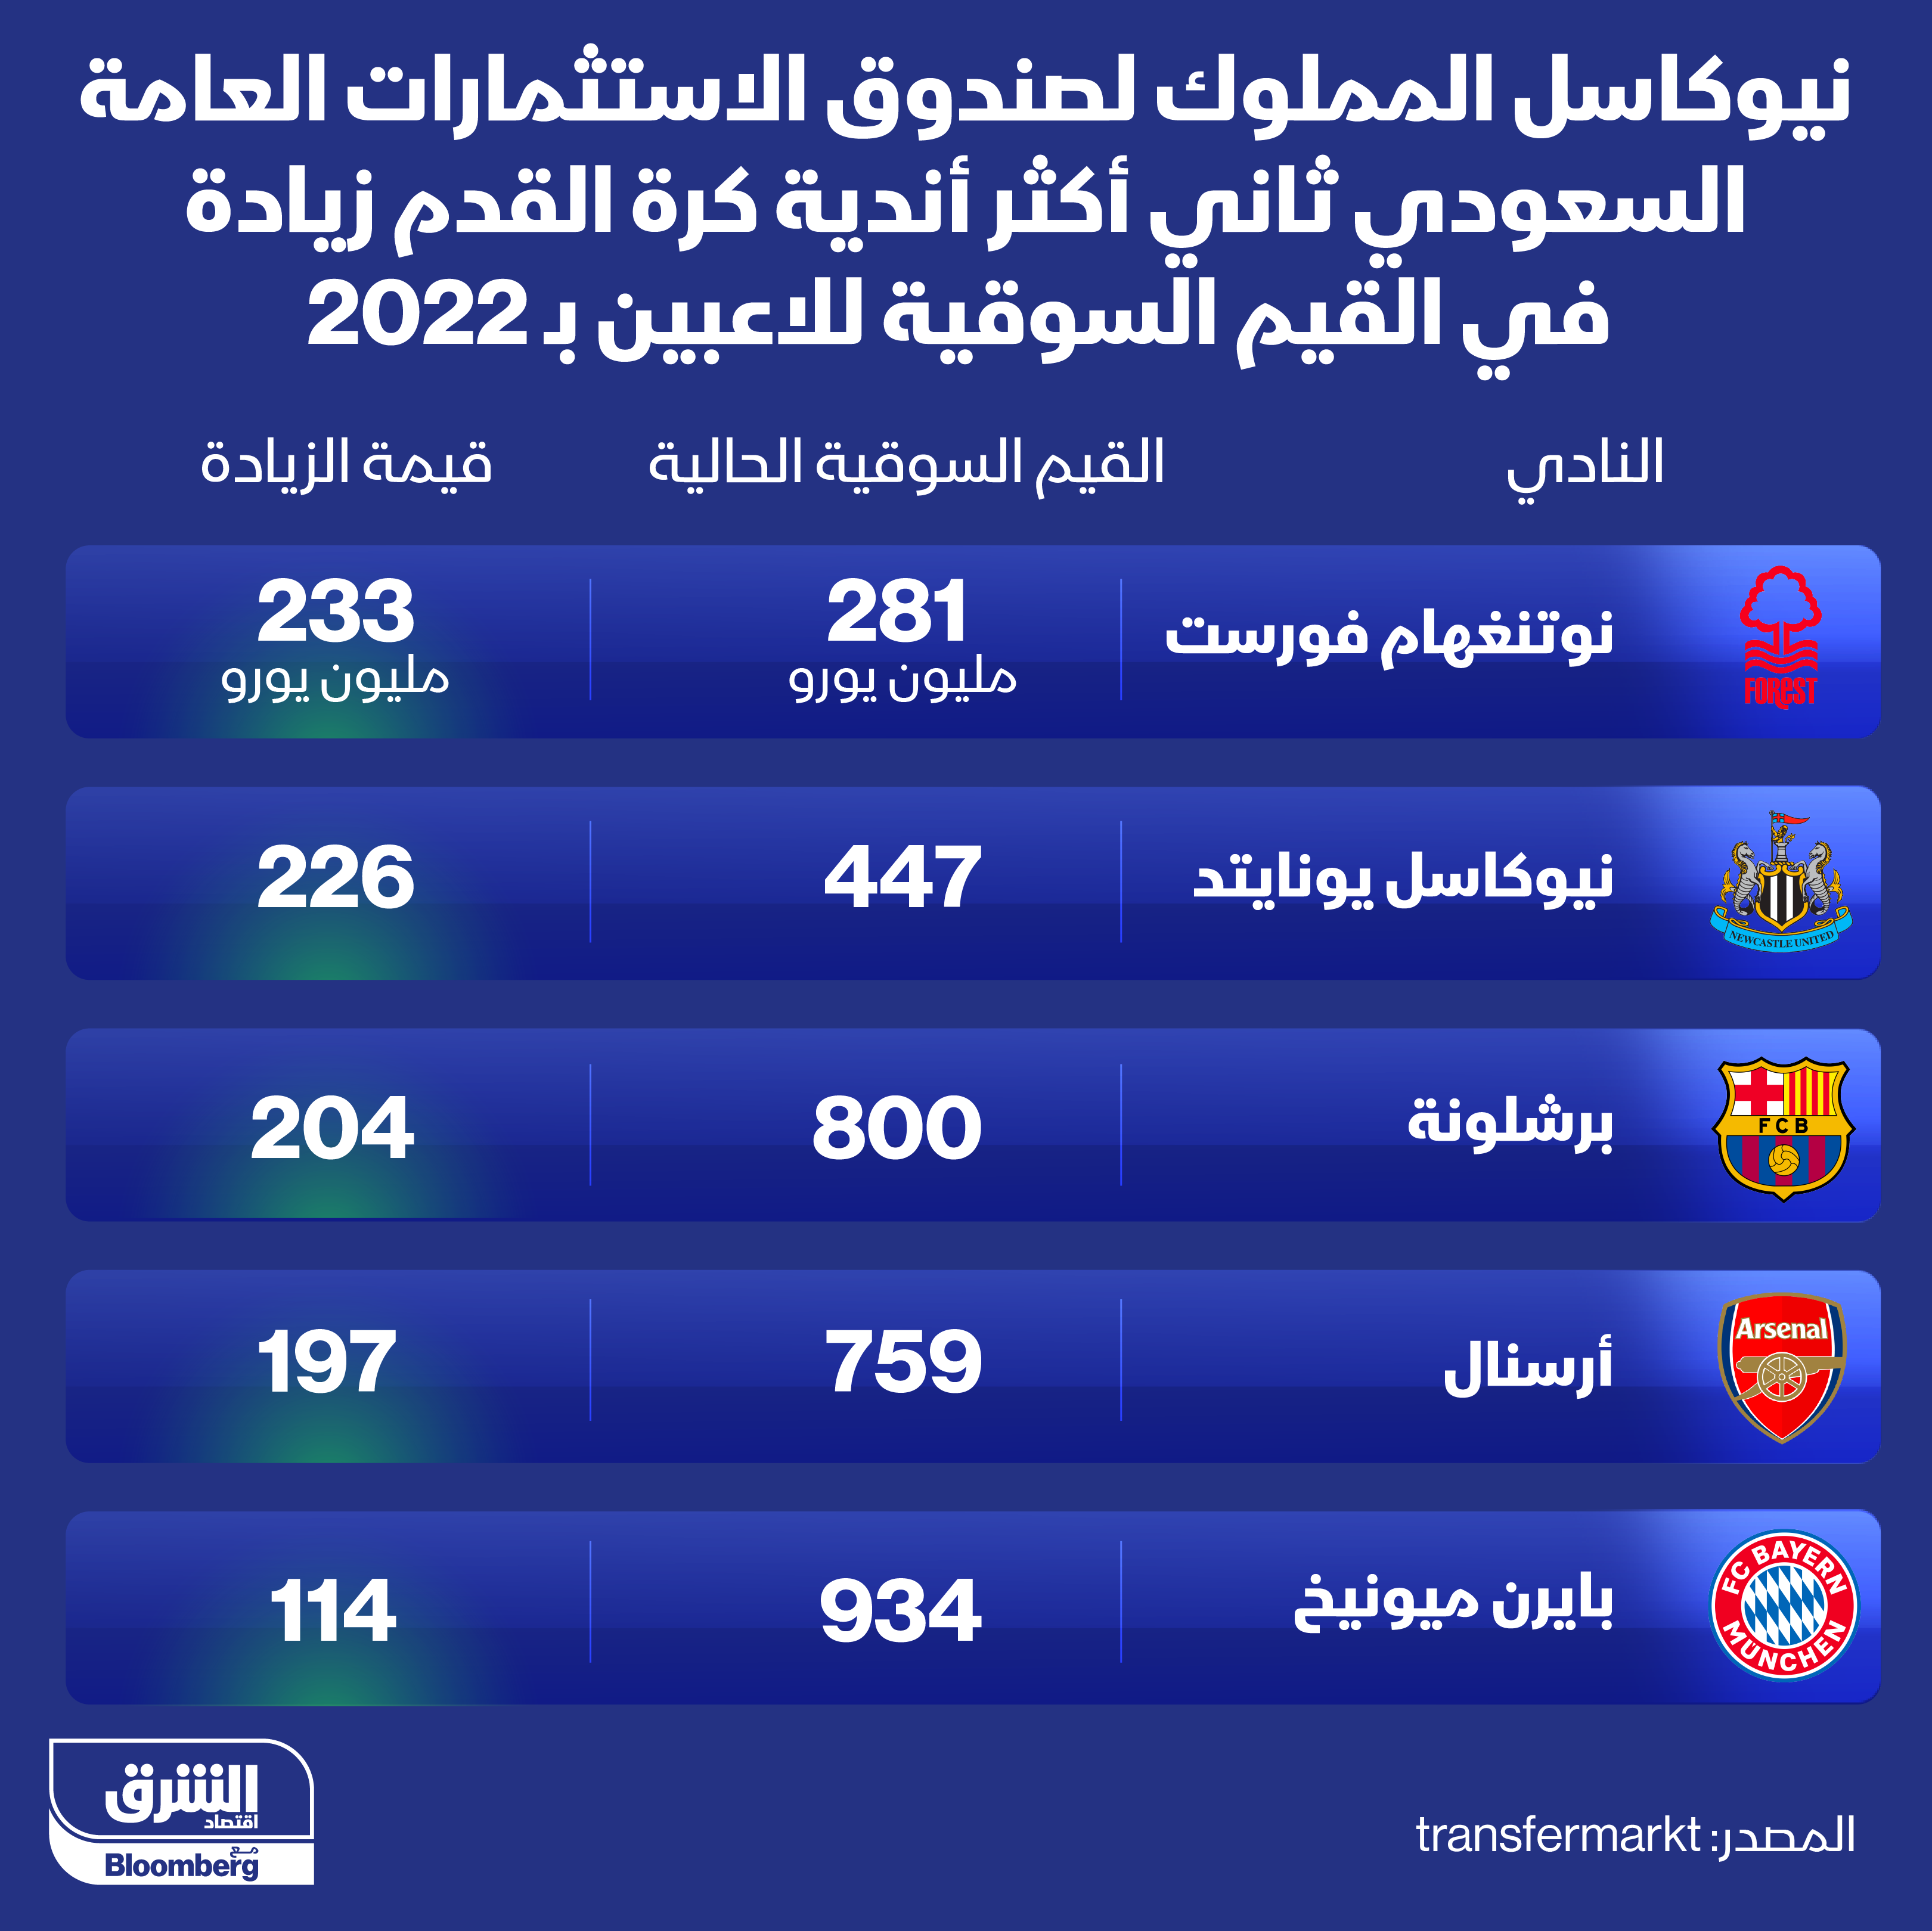 زادت القيمة السوقية للاعبي نيوكاسل خلال 2022 بمقدار 226 مليون يورو